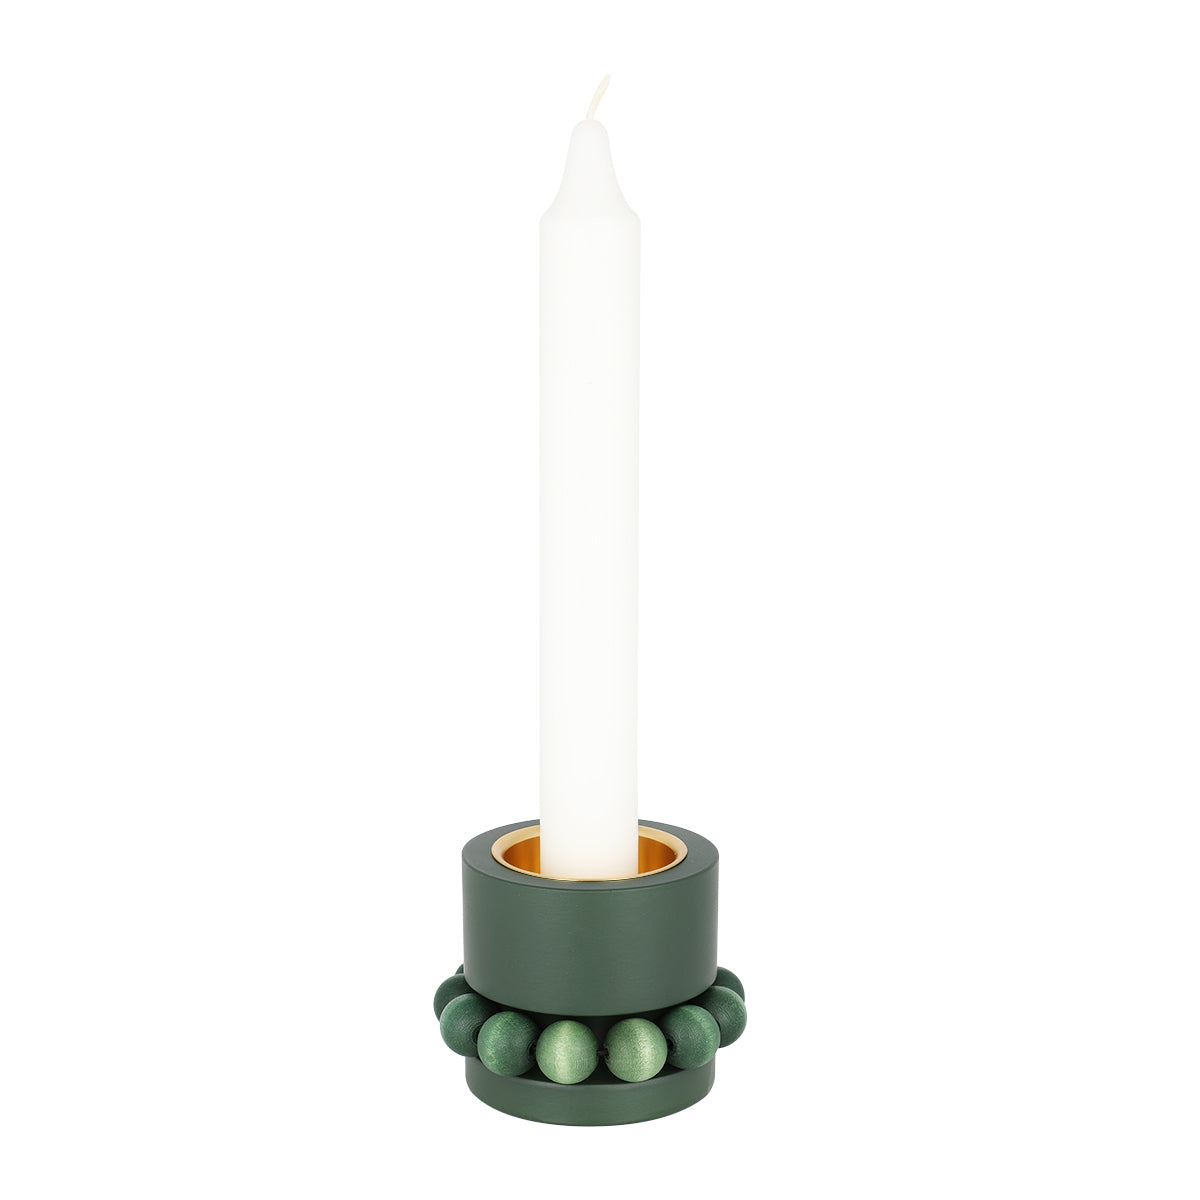 Prinsessa candleholder, moss green